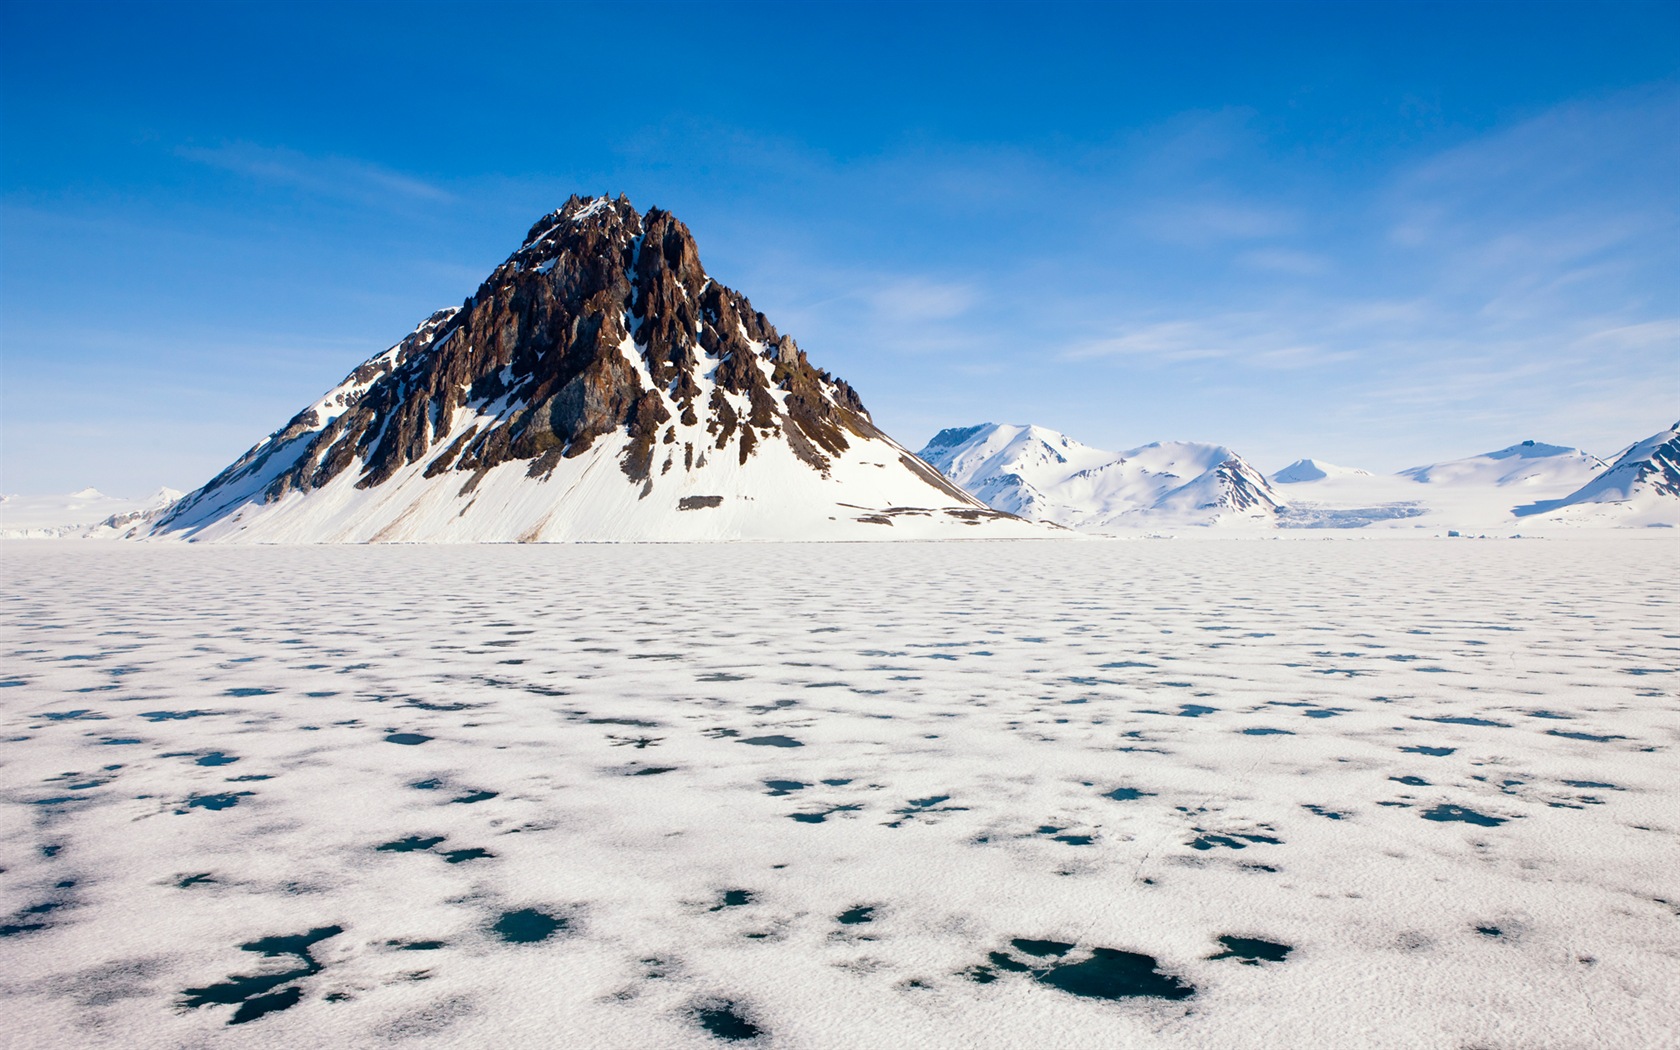 Windows 8: Fondos del Ártico, el paisaje ecológico, ártico animales #1 - 1680x1050